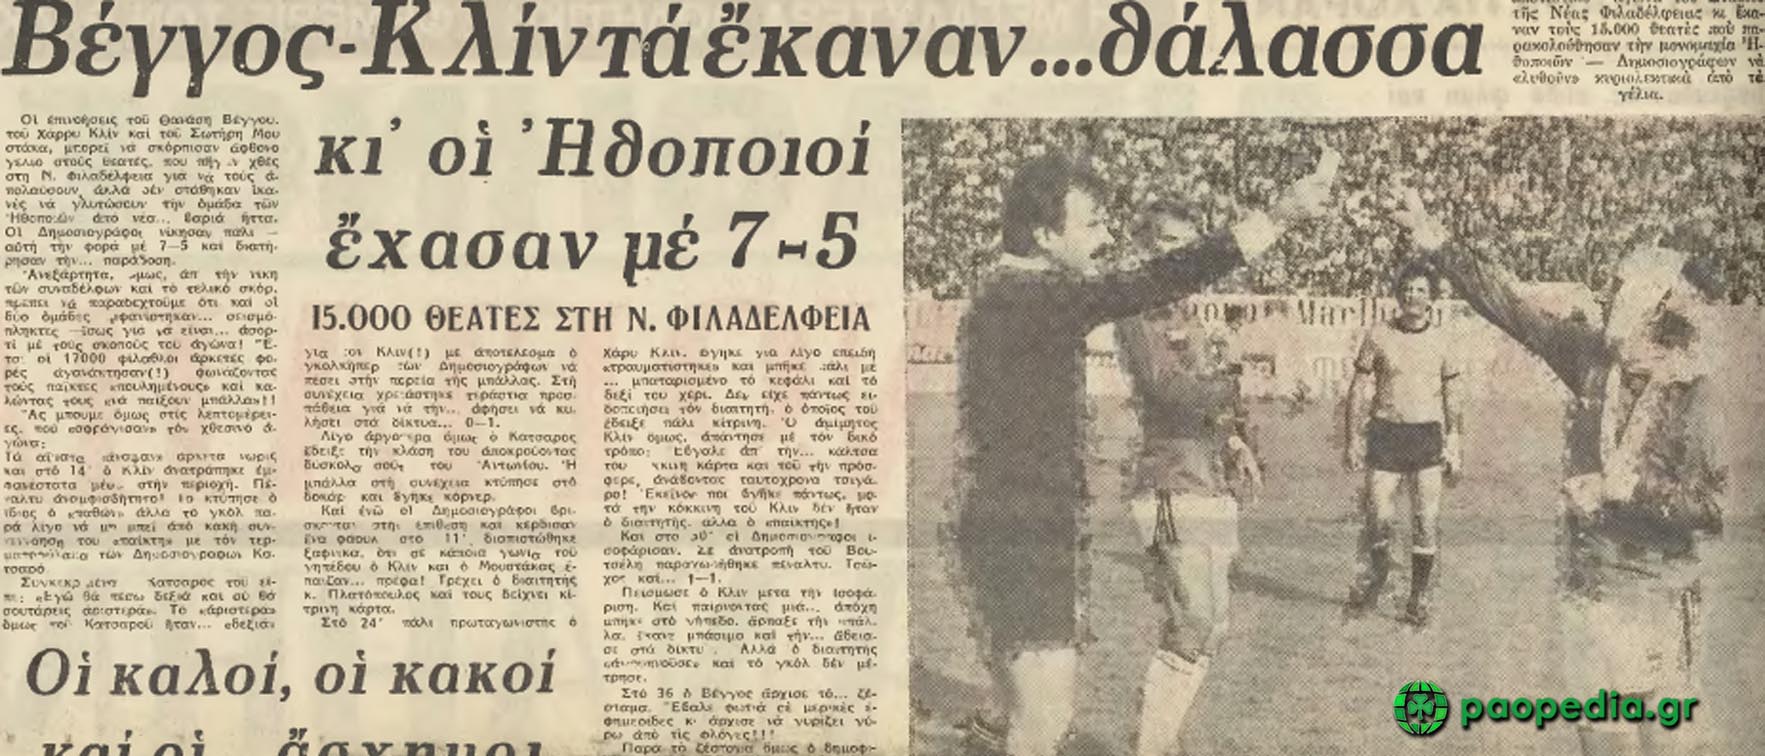 Ηθοποιοί εναντίον δημοσιογράφων. Δημοσίευμα της εφημερίδας «Αθλητική Ηχώ» στις 14 Απριλίου 1981.